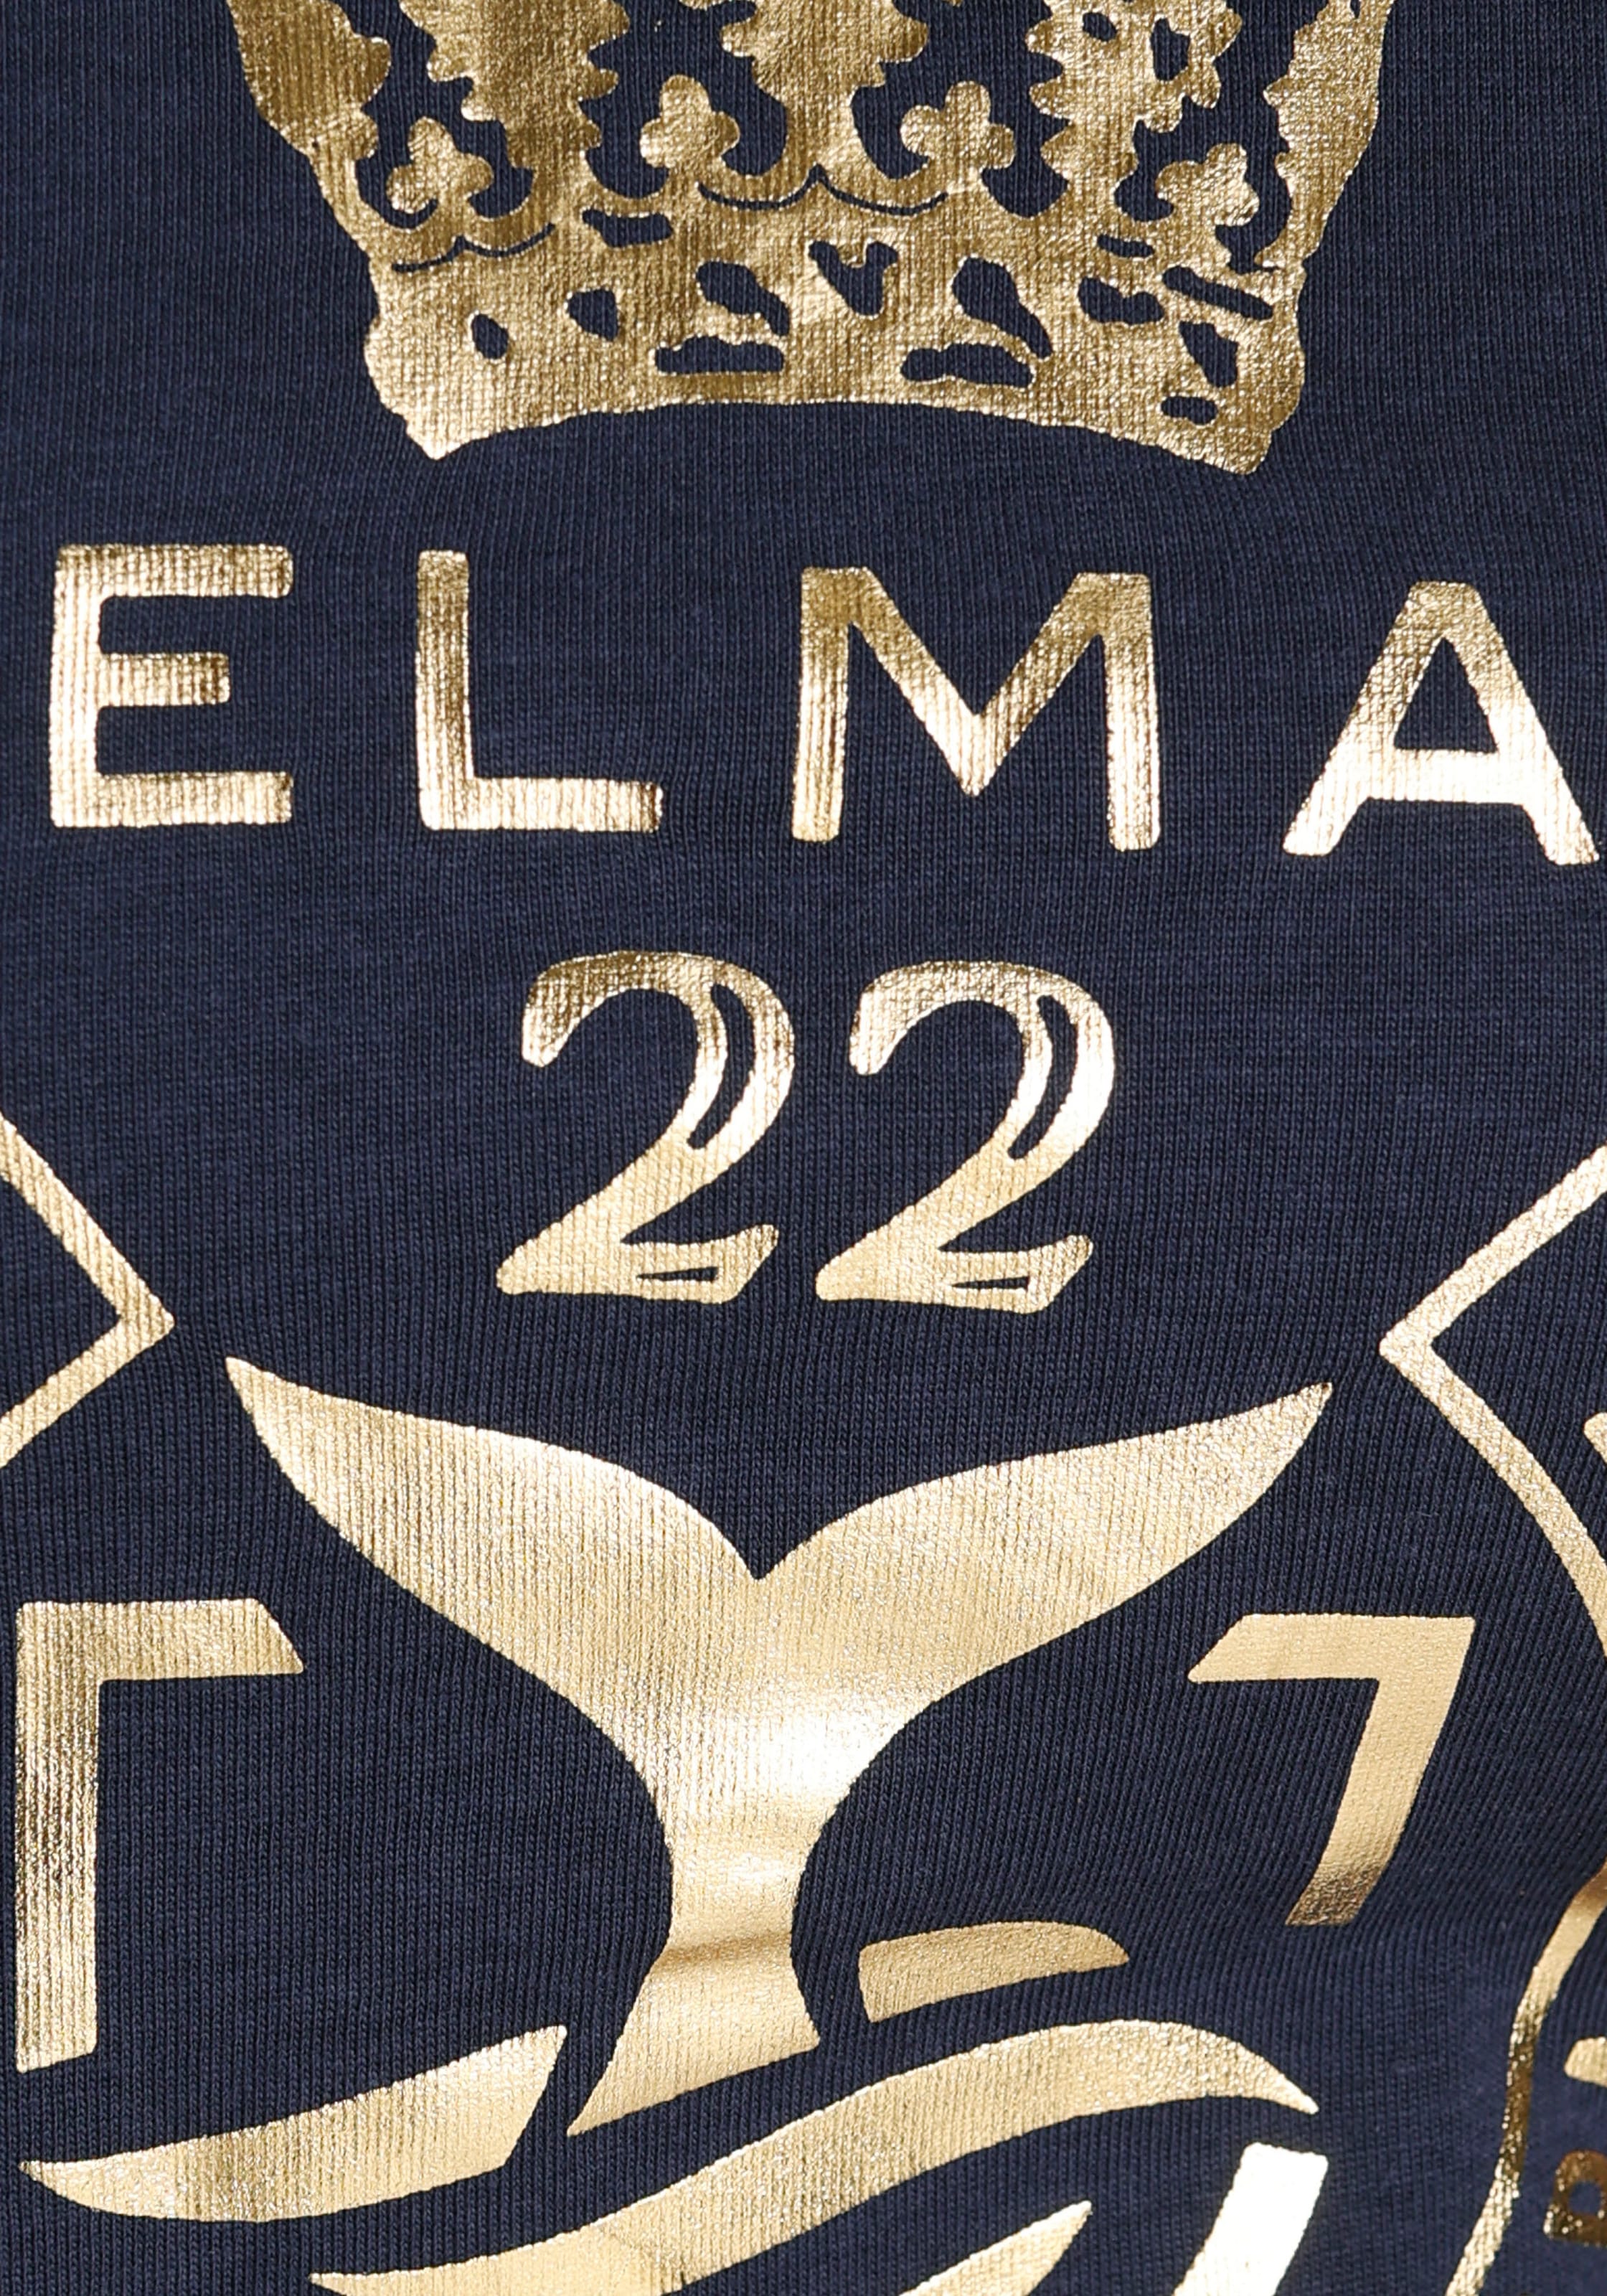 DELMAO T-Shirt, goldfarbenem ♕ bei Folienprint hochwertigem, - mit MARKE! NEUE